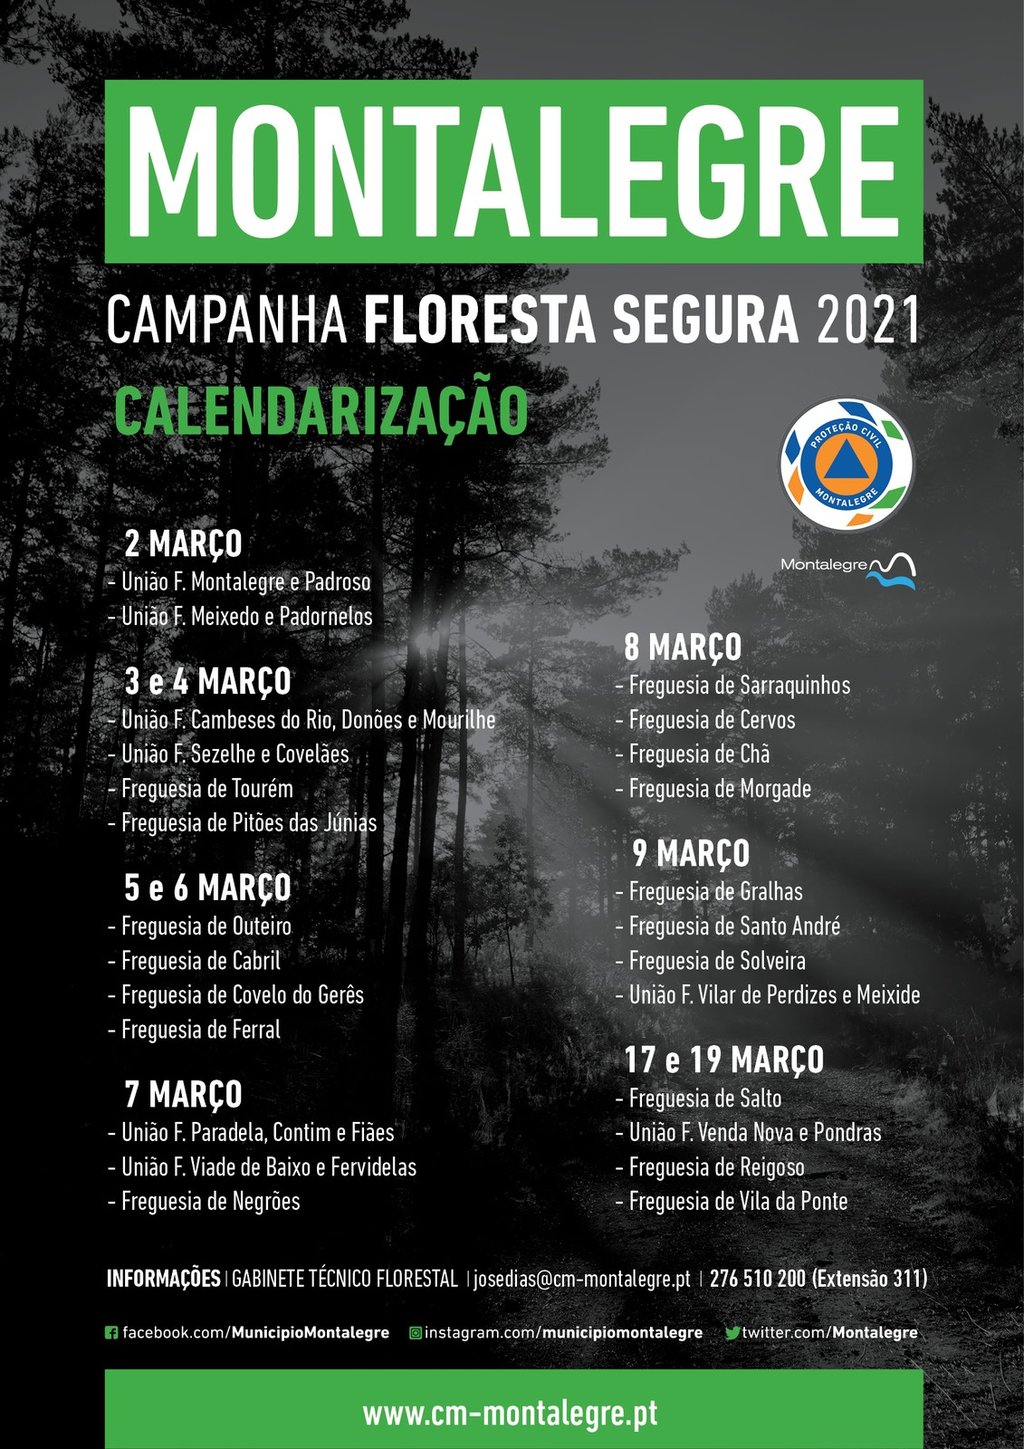 Campanha Floresta Segura 2021 | Ações no Concelho